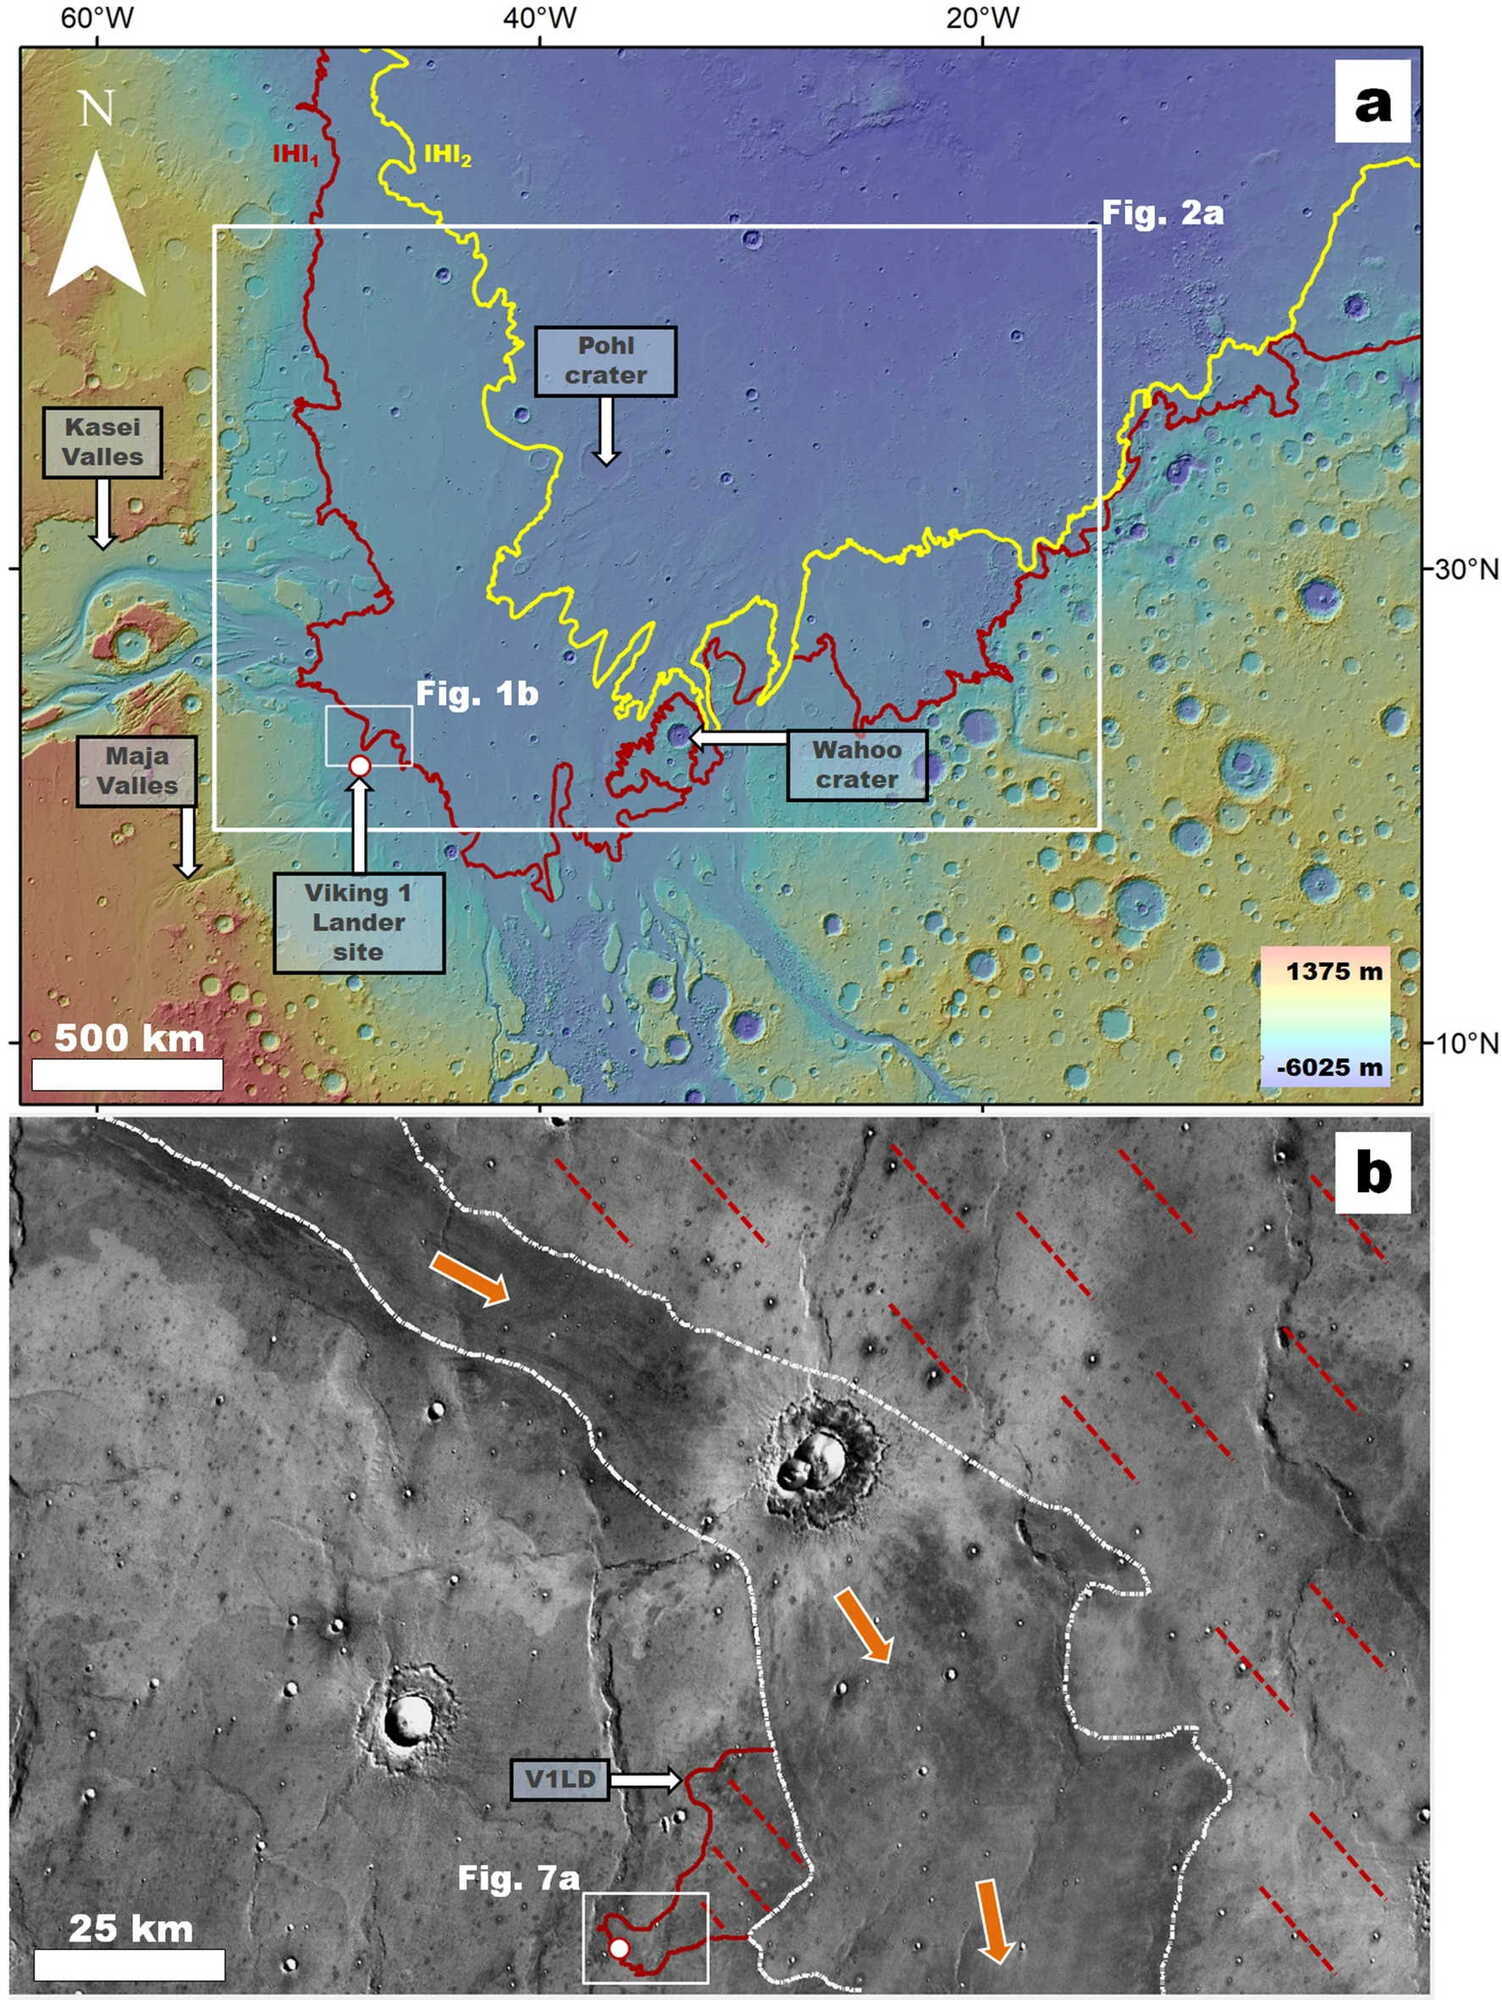 Регион Chryse Planitia, где красным обозначены границы древнего цунами, а также место посадки ''Викинг-1''